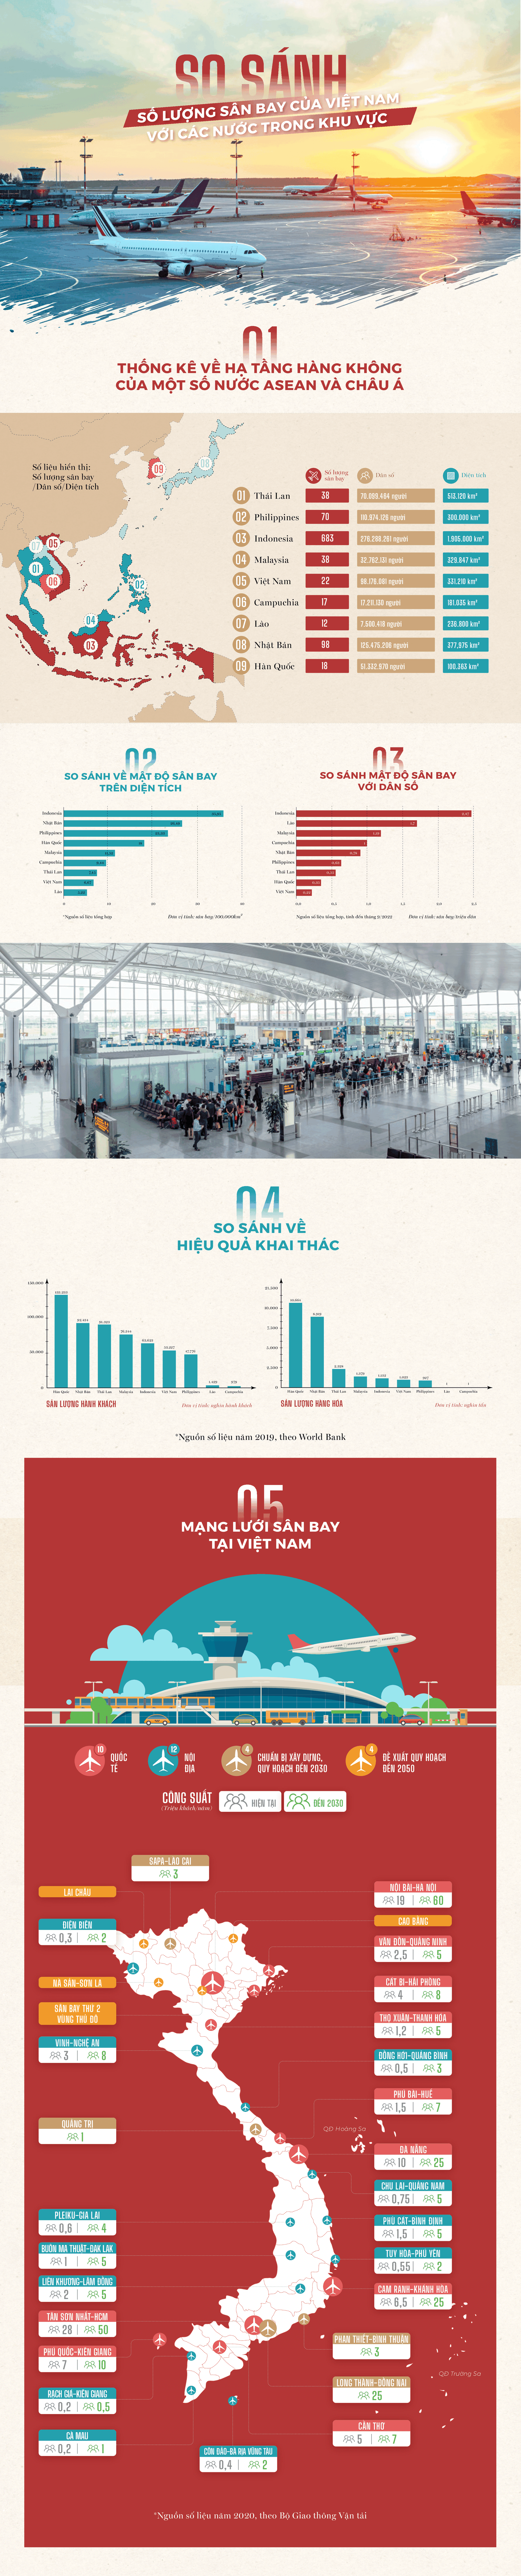 Infographic Mật độ sân bay tại Việt Nam nằm nhóm cuối bảng trong khu vực